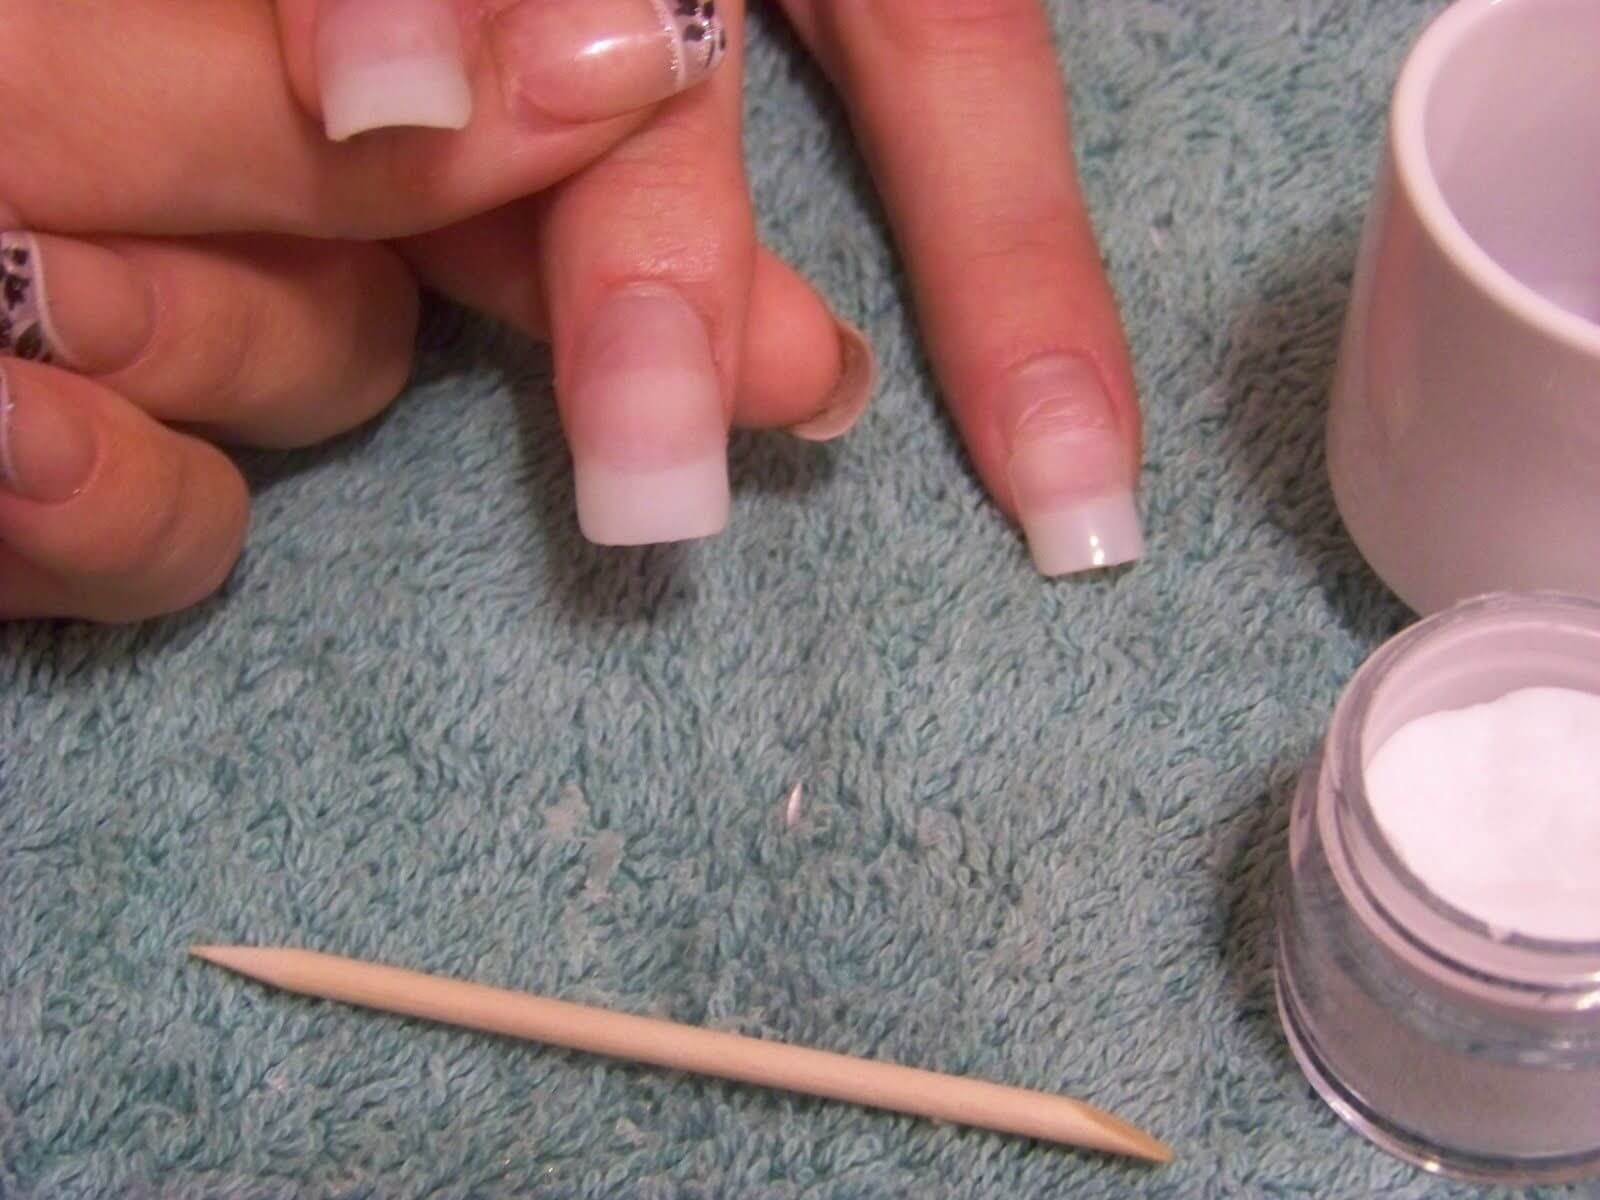 Наращивание ногтей акрилом: инструкция пошагово в домашних условиях для начинающих, что лучше гель или акрил, а также что нужно для процедуры?